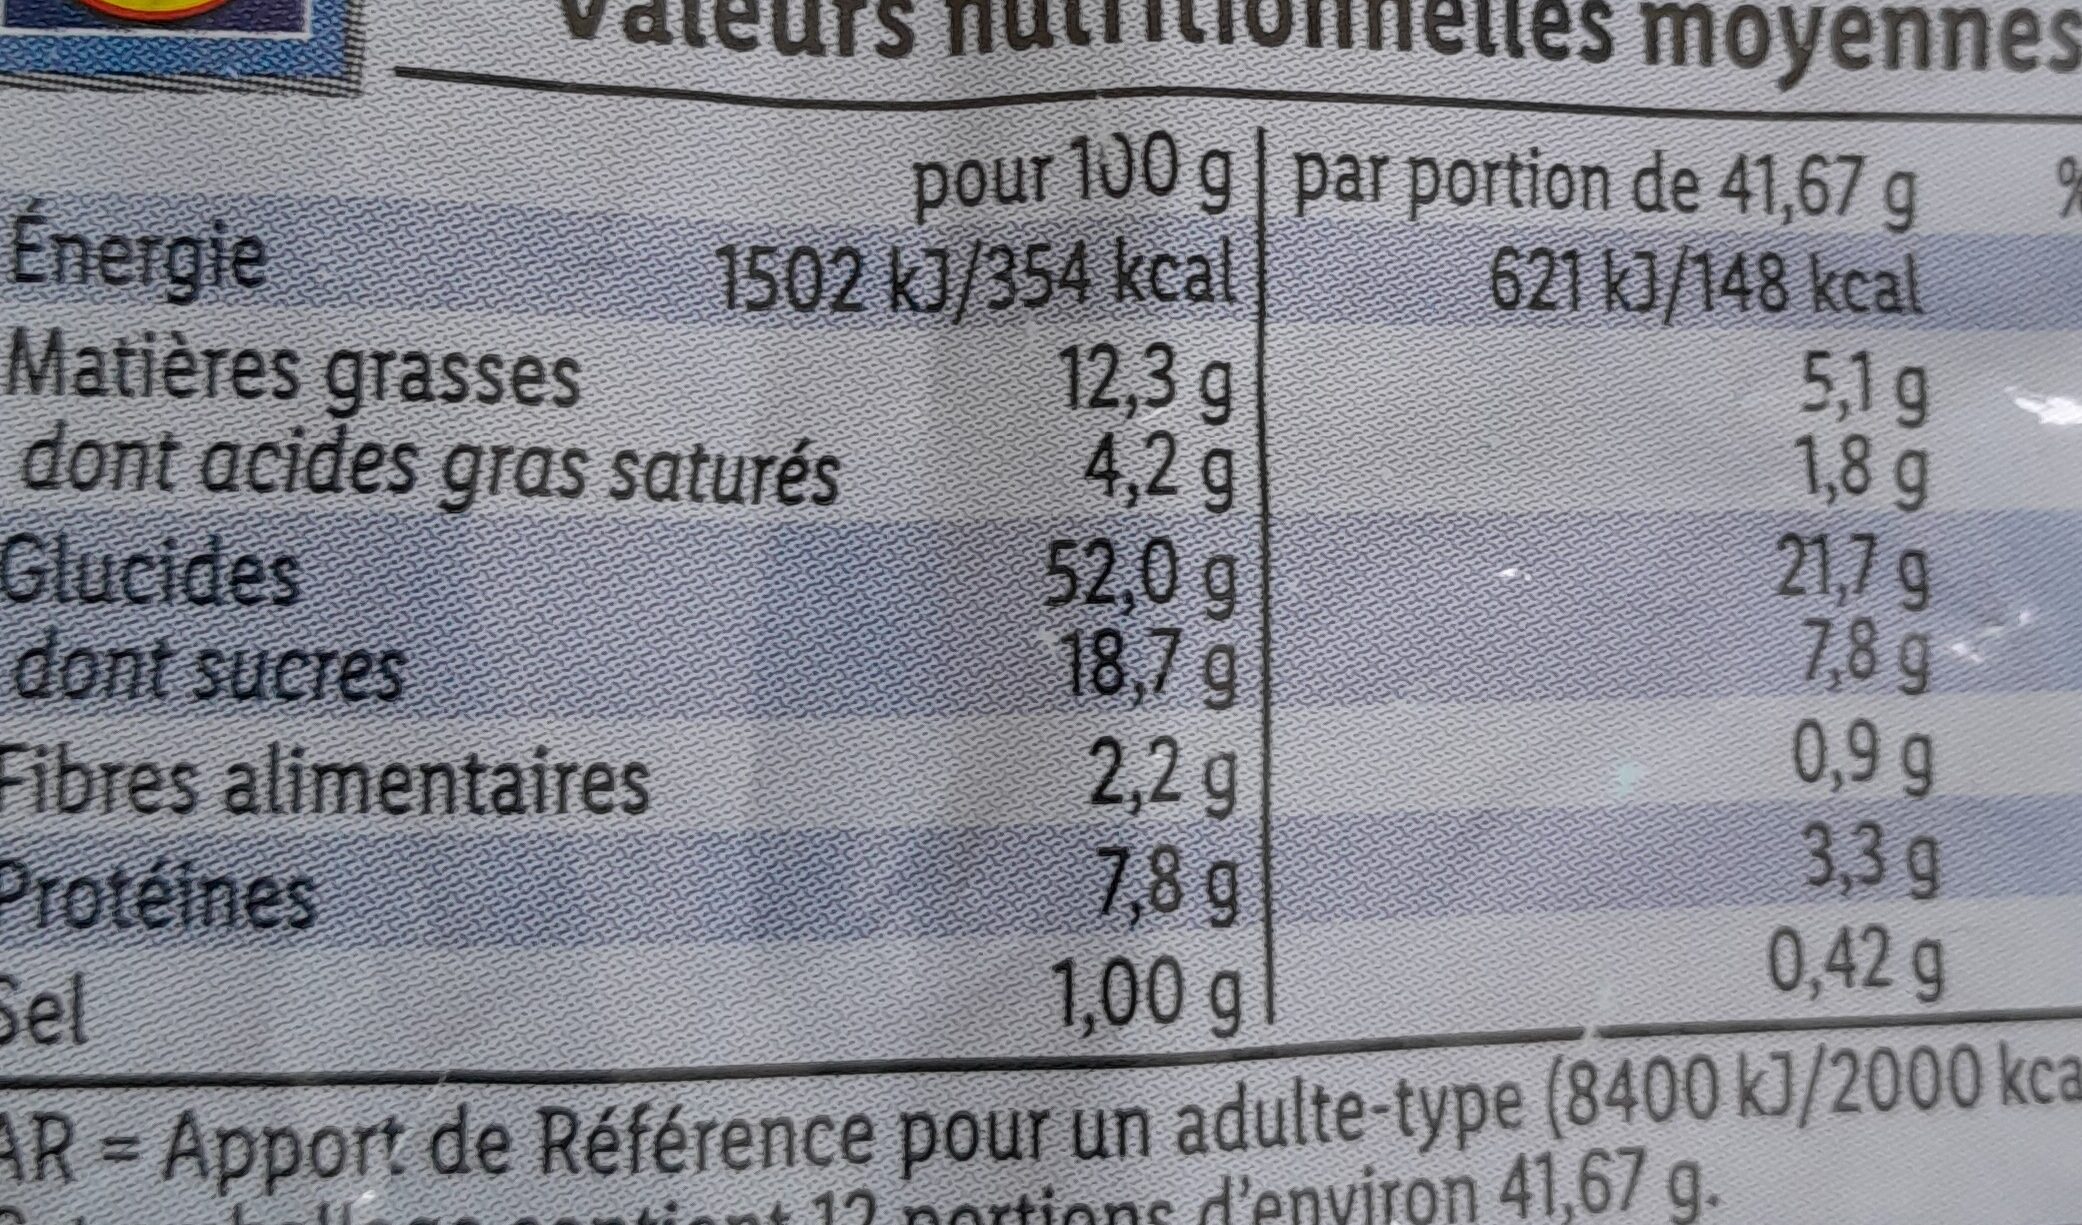 briochettes aux pépites de chocolat au lait - Nutrition facts - fr